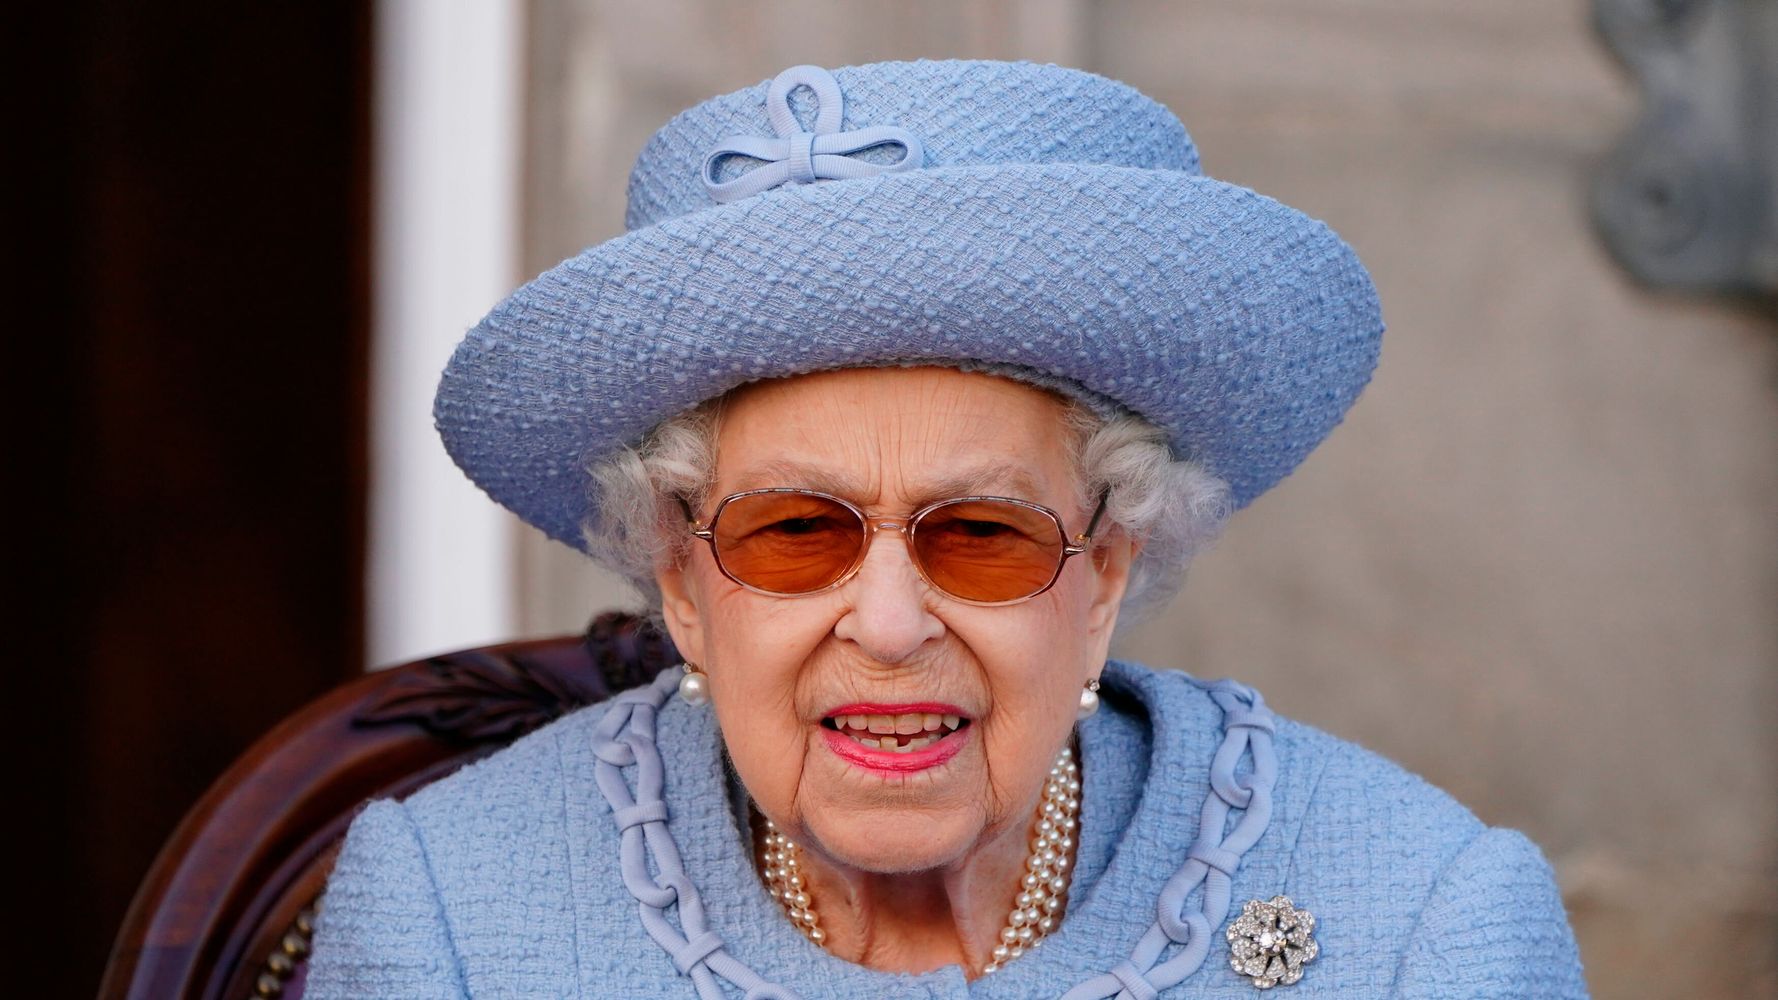 Les autorités britanniques inculpent un homme qui a tenté de blesser la reine Elizabeth avec une arbalète